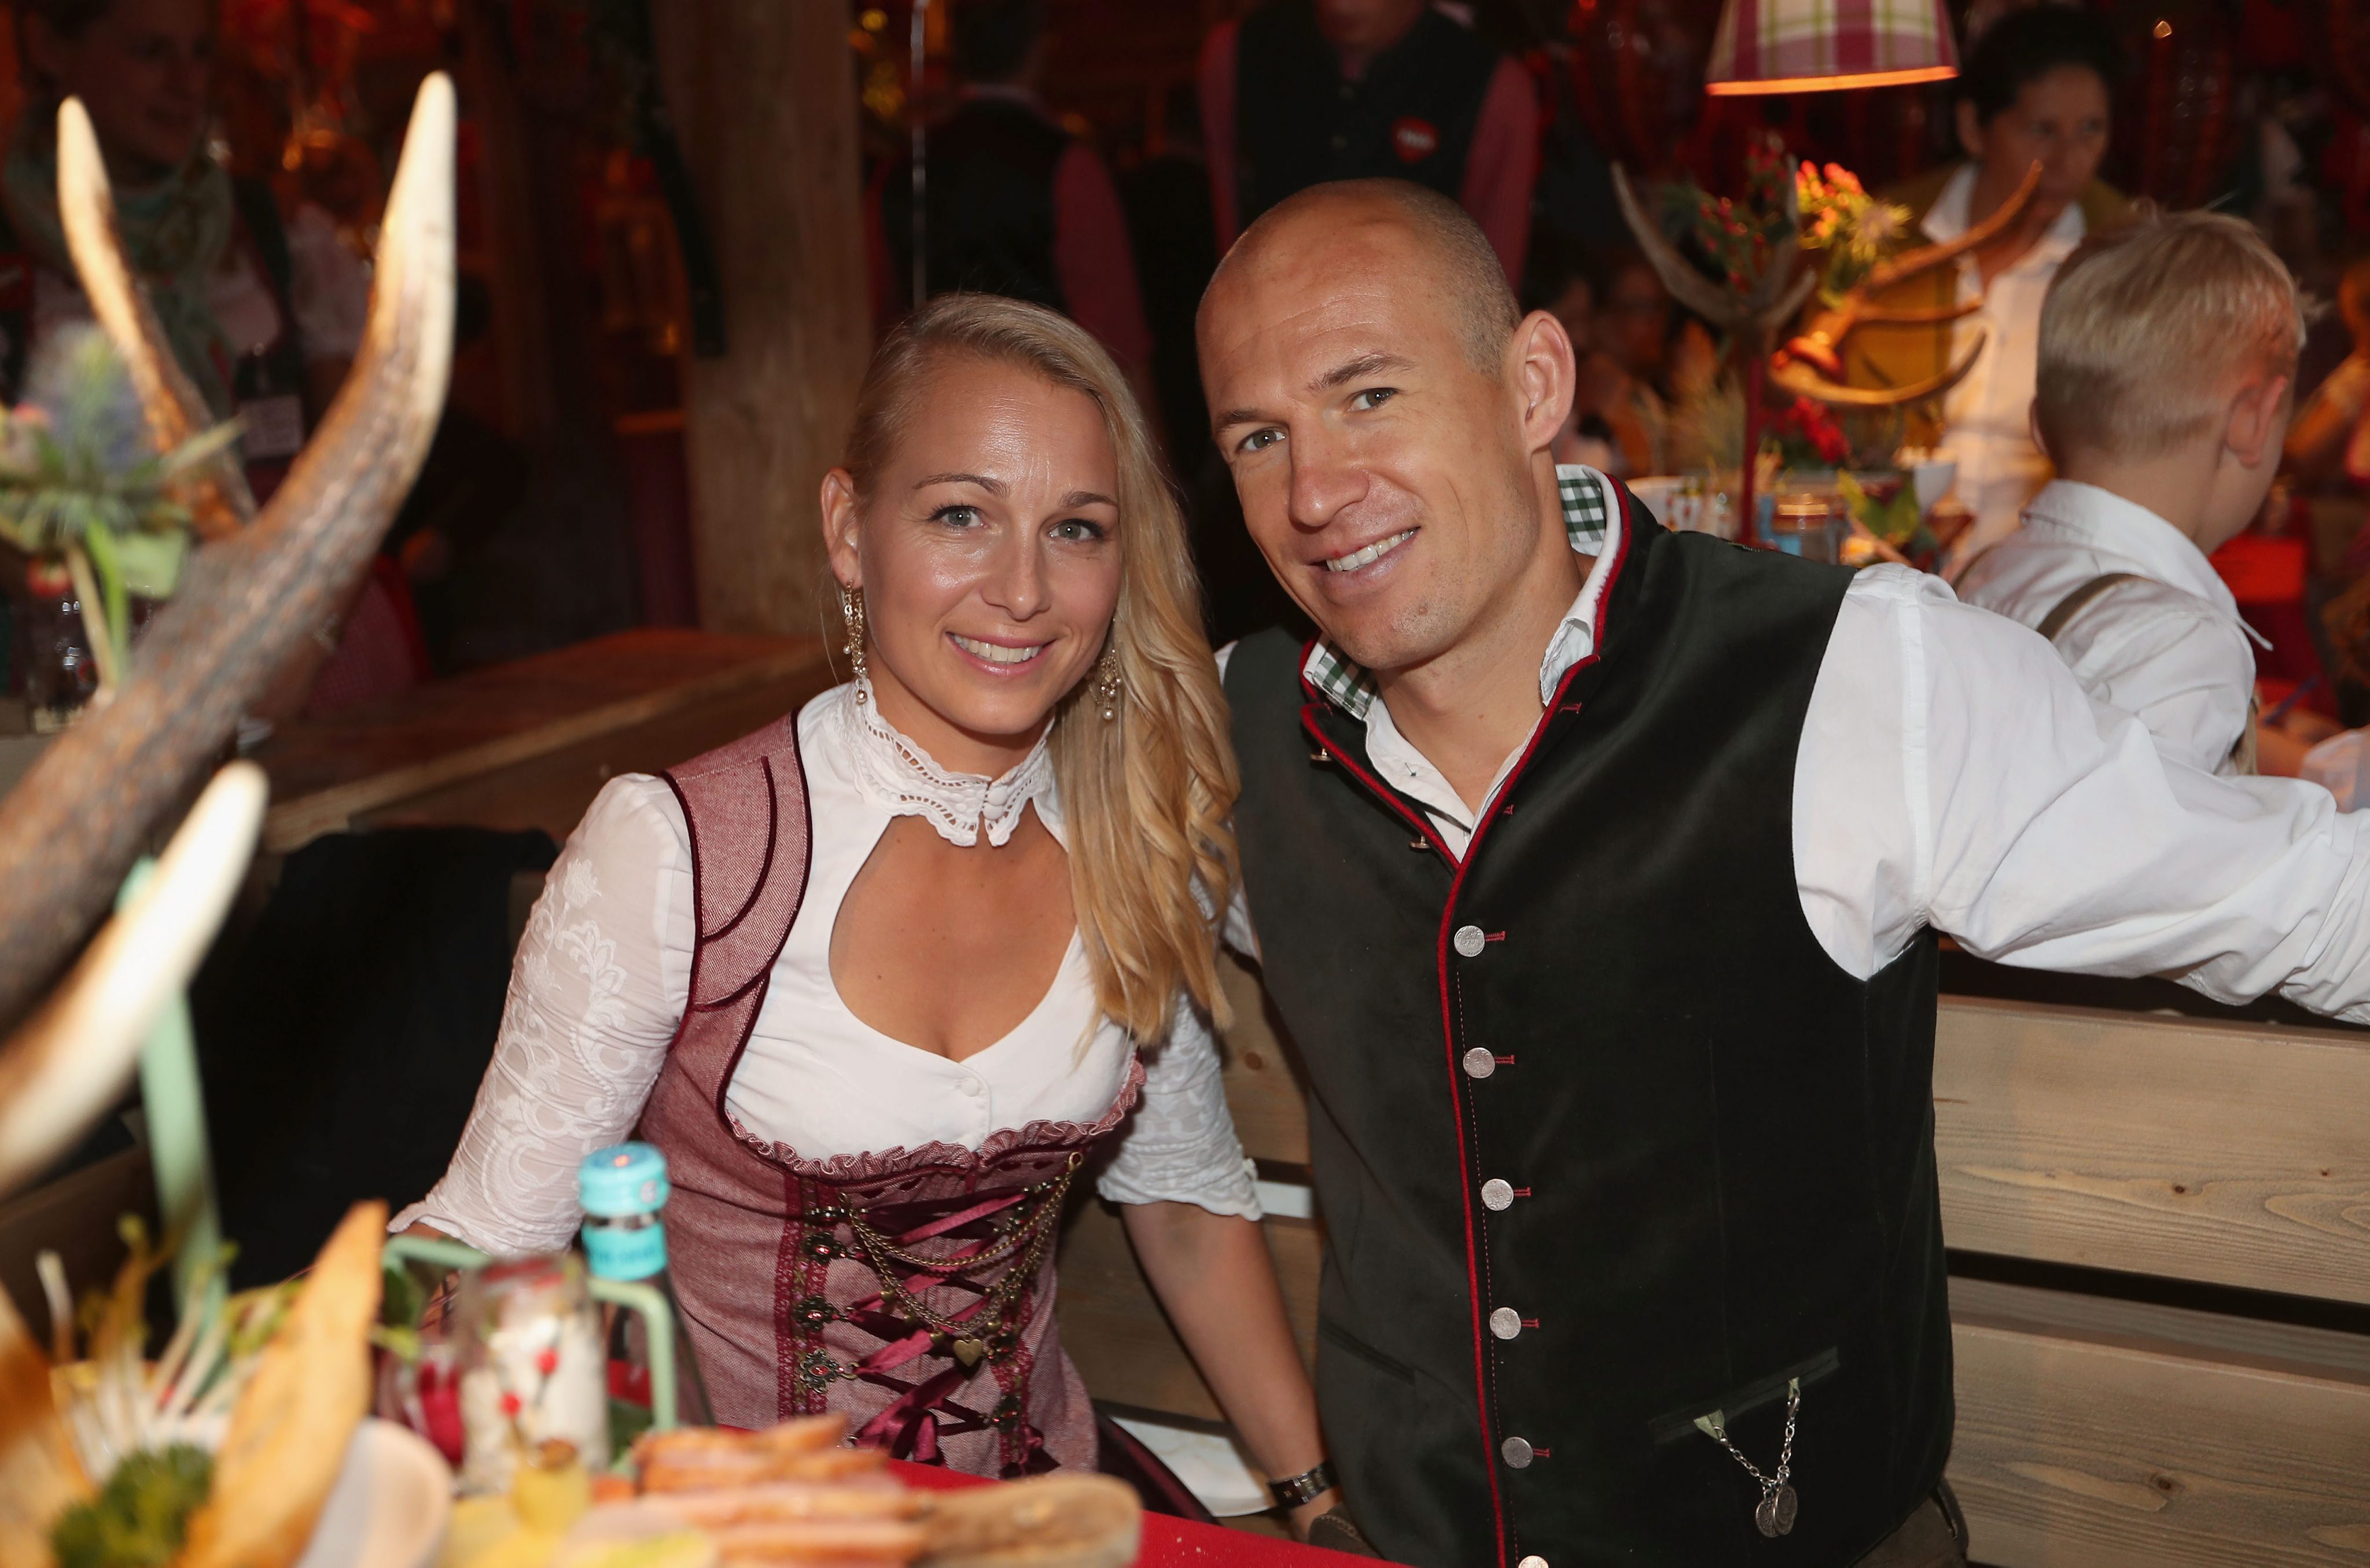 Maandag is de laatste dag van het jaarlijkse Oktoberfest in München, dat ook vele miljoenen bezoekers van over de hele wereld trekt. Tussen hen vonden we een aantal bekende gezichten.